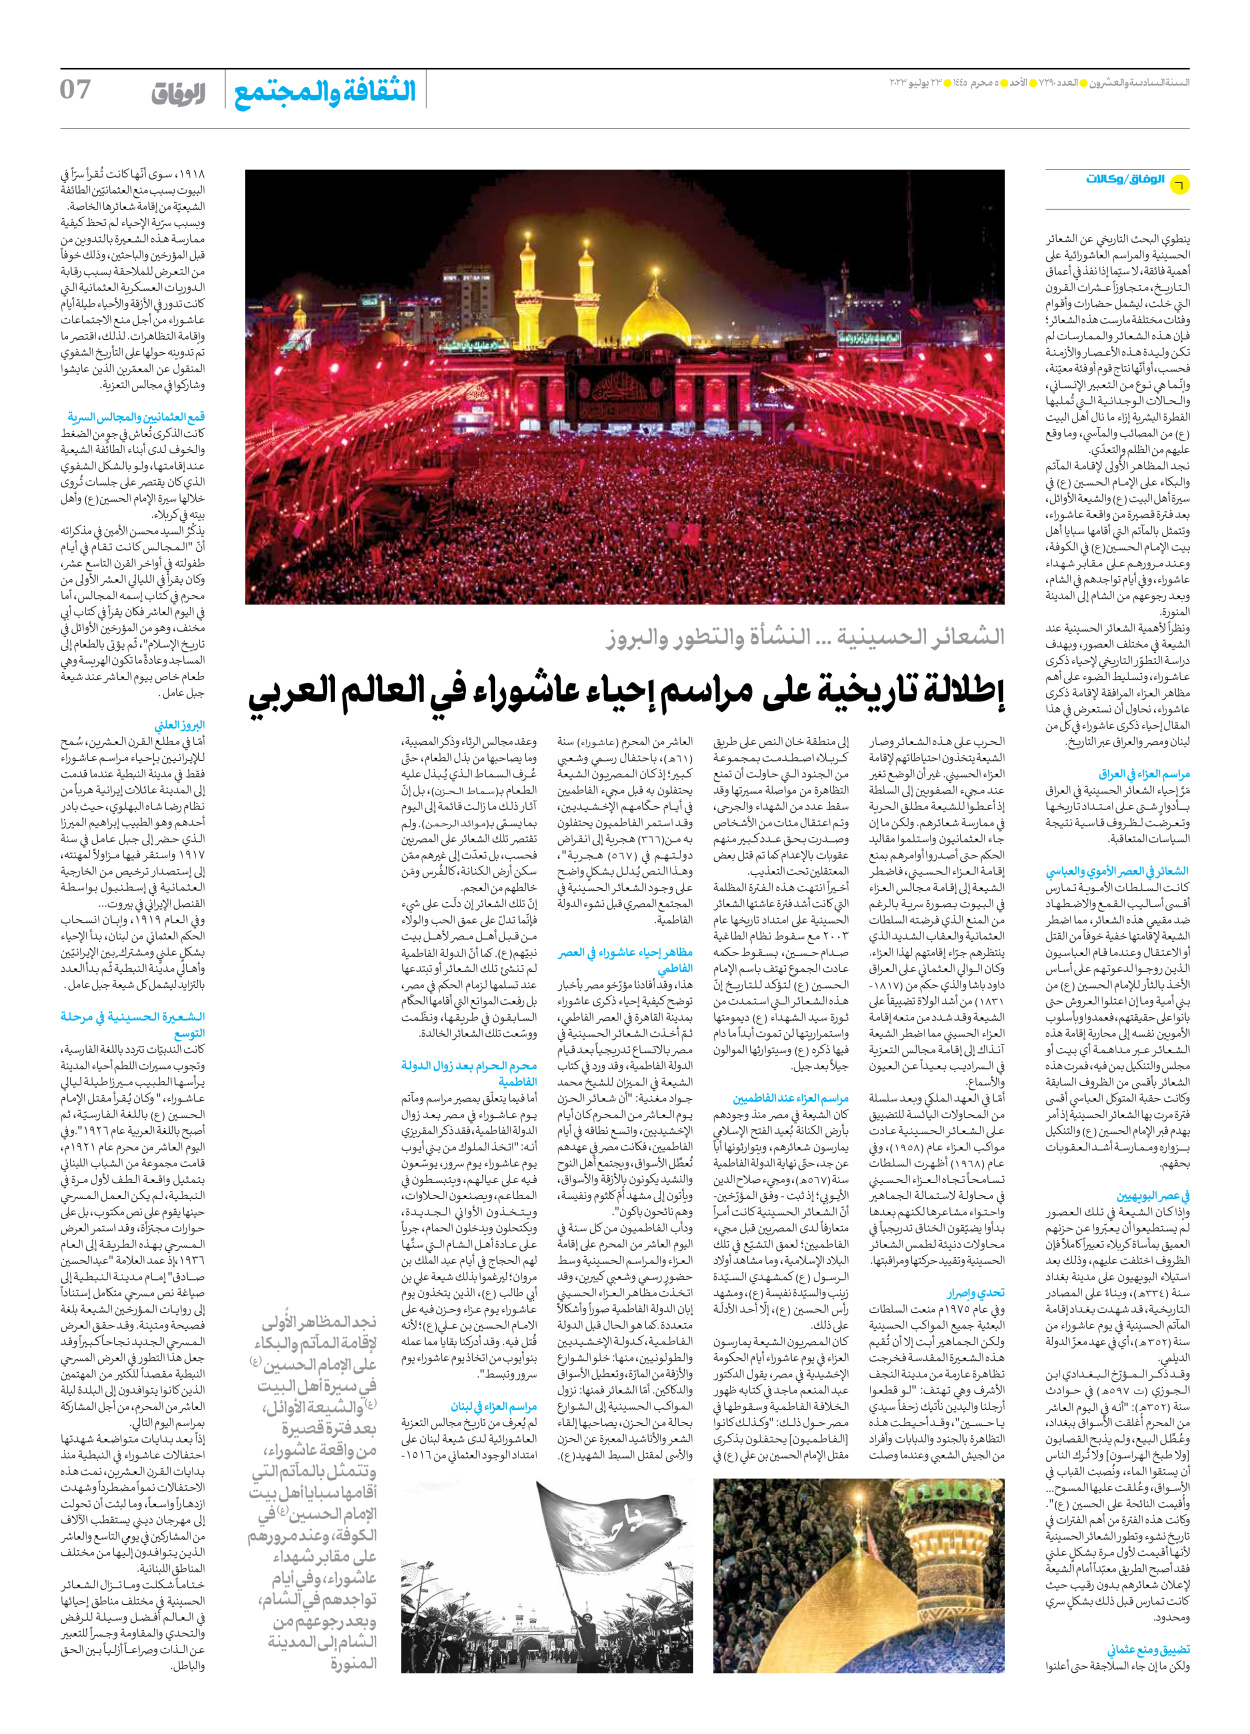 صحیفة ایران الدولیة الوفاق - العدد سبعة آلاف ومائتان وتسعون - ٢٣ يوليو ٢٠٢٣ - الصفحة ۷